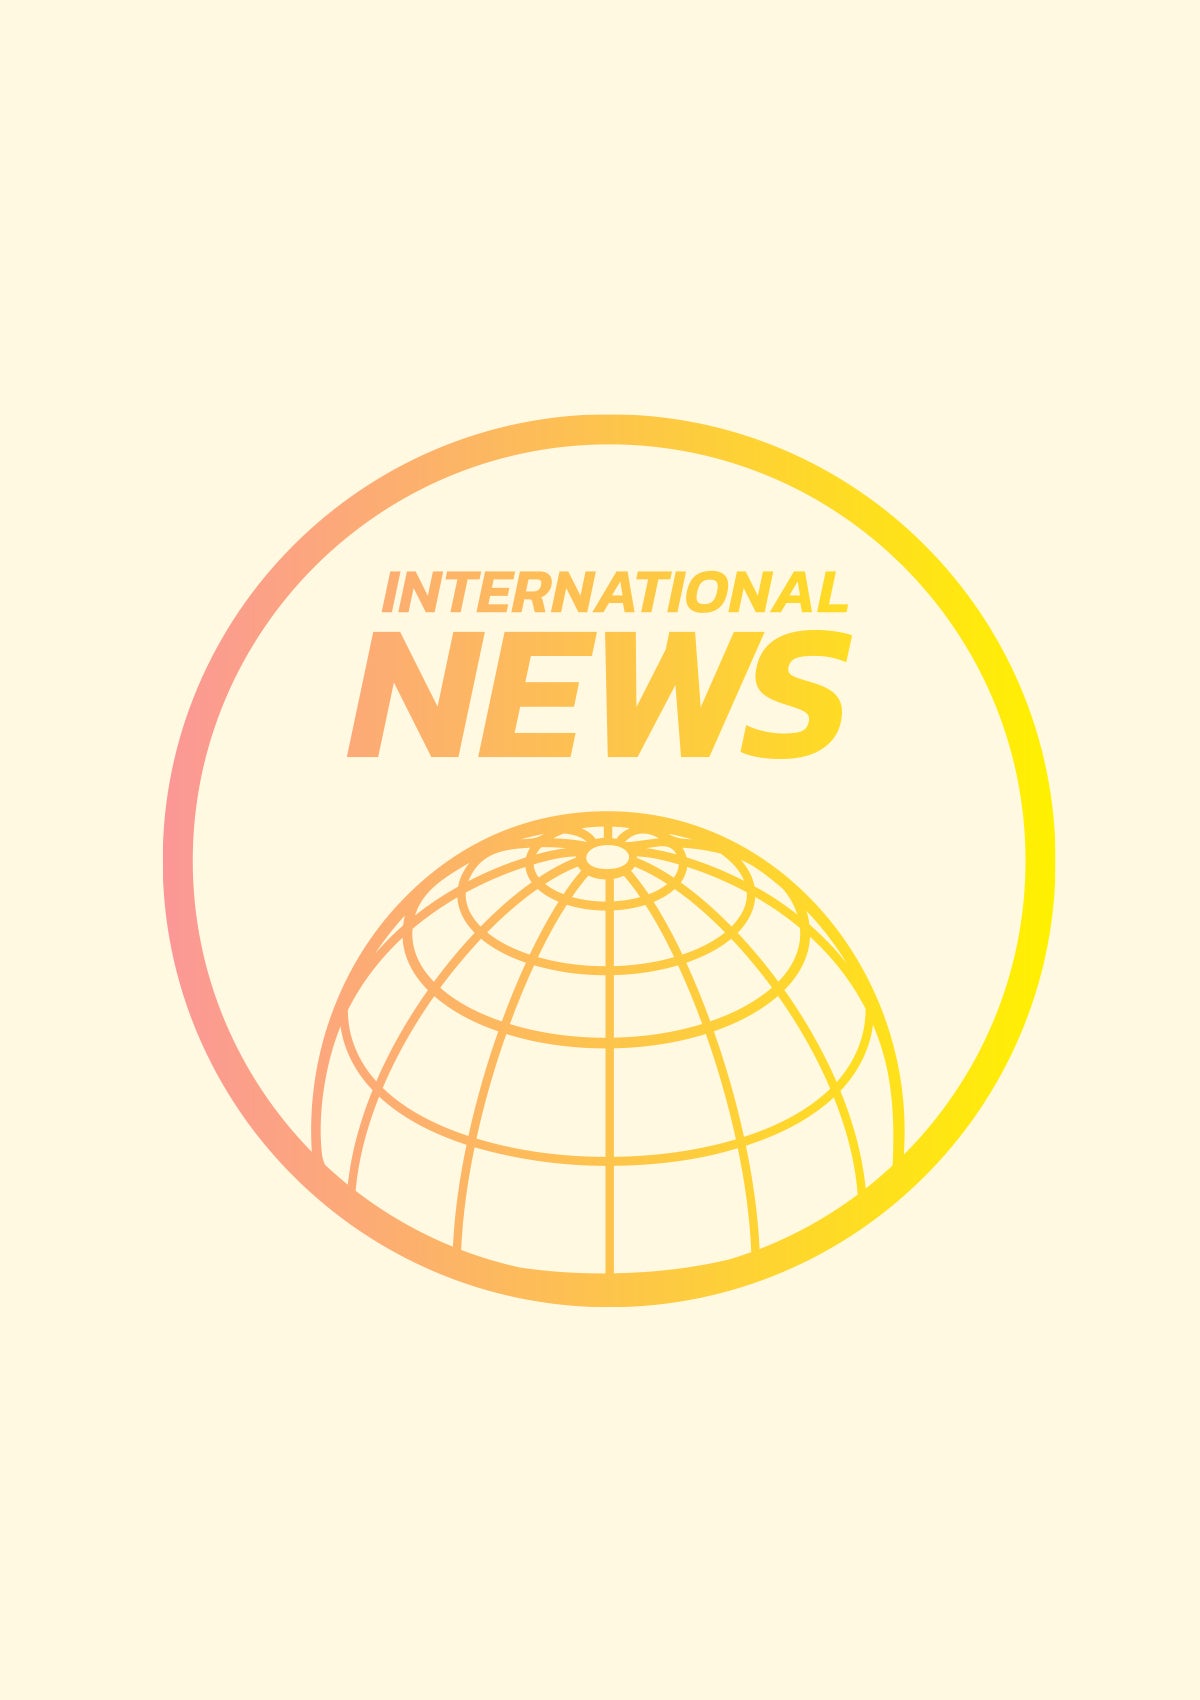 International News 2021 Lookbook